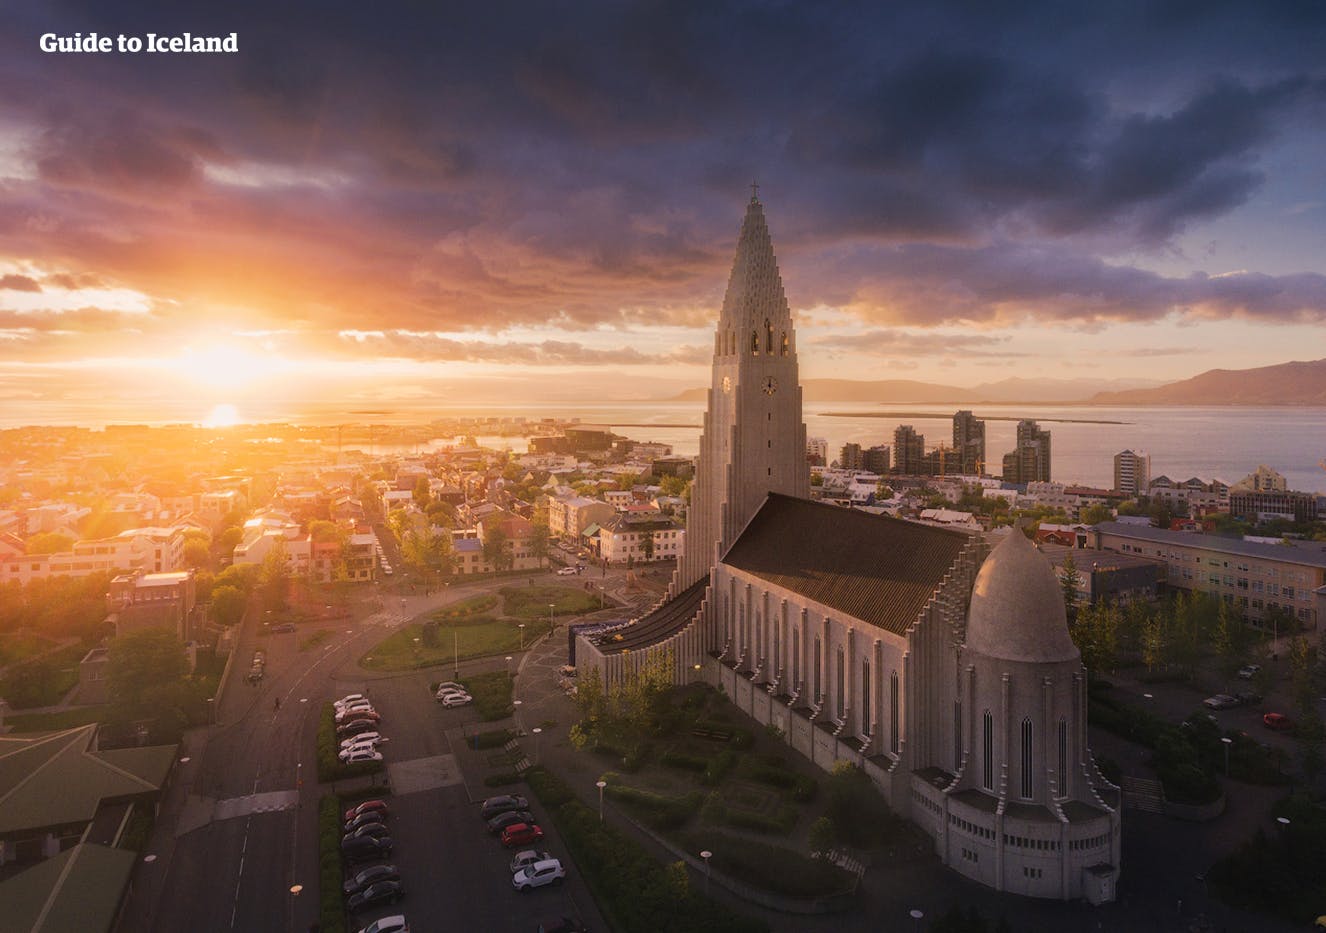 Reykjavík is een kleurrijke, culturele en eigenzinnige hoofdstad.